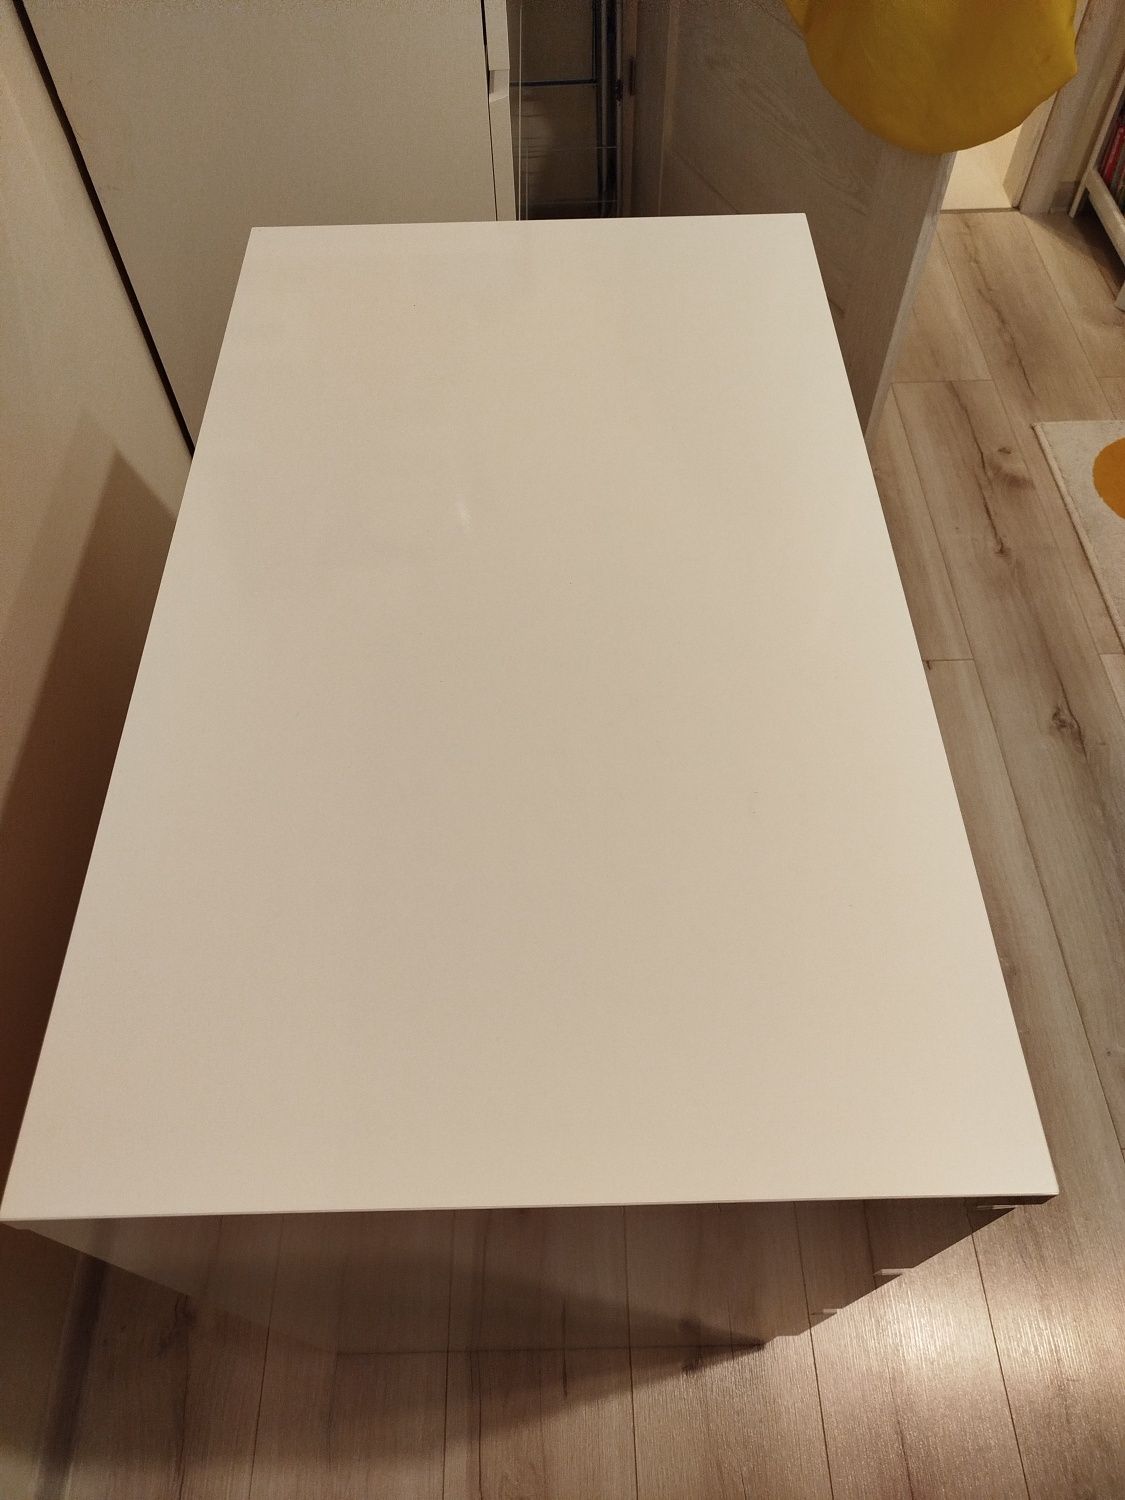 Komoda Malm IKEA biały połysk, 80x78, 3 szuflady